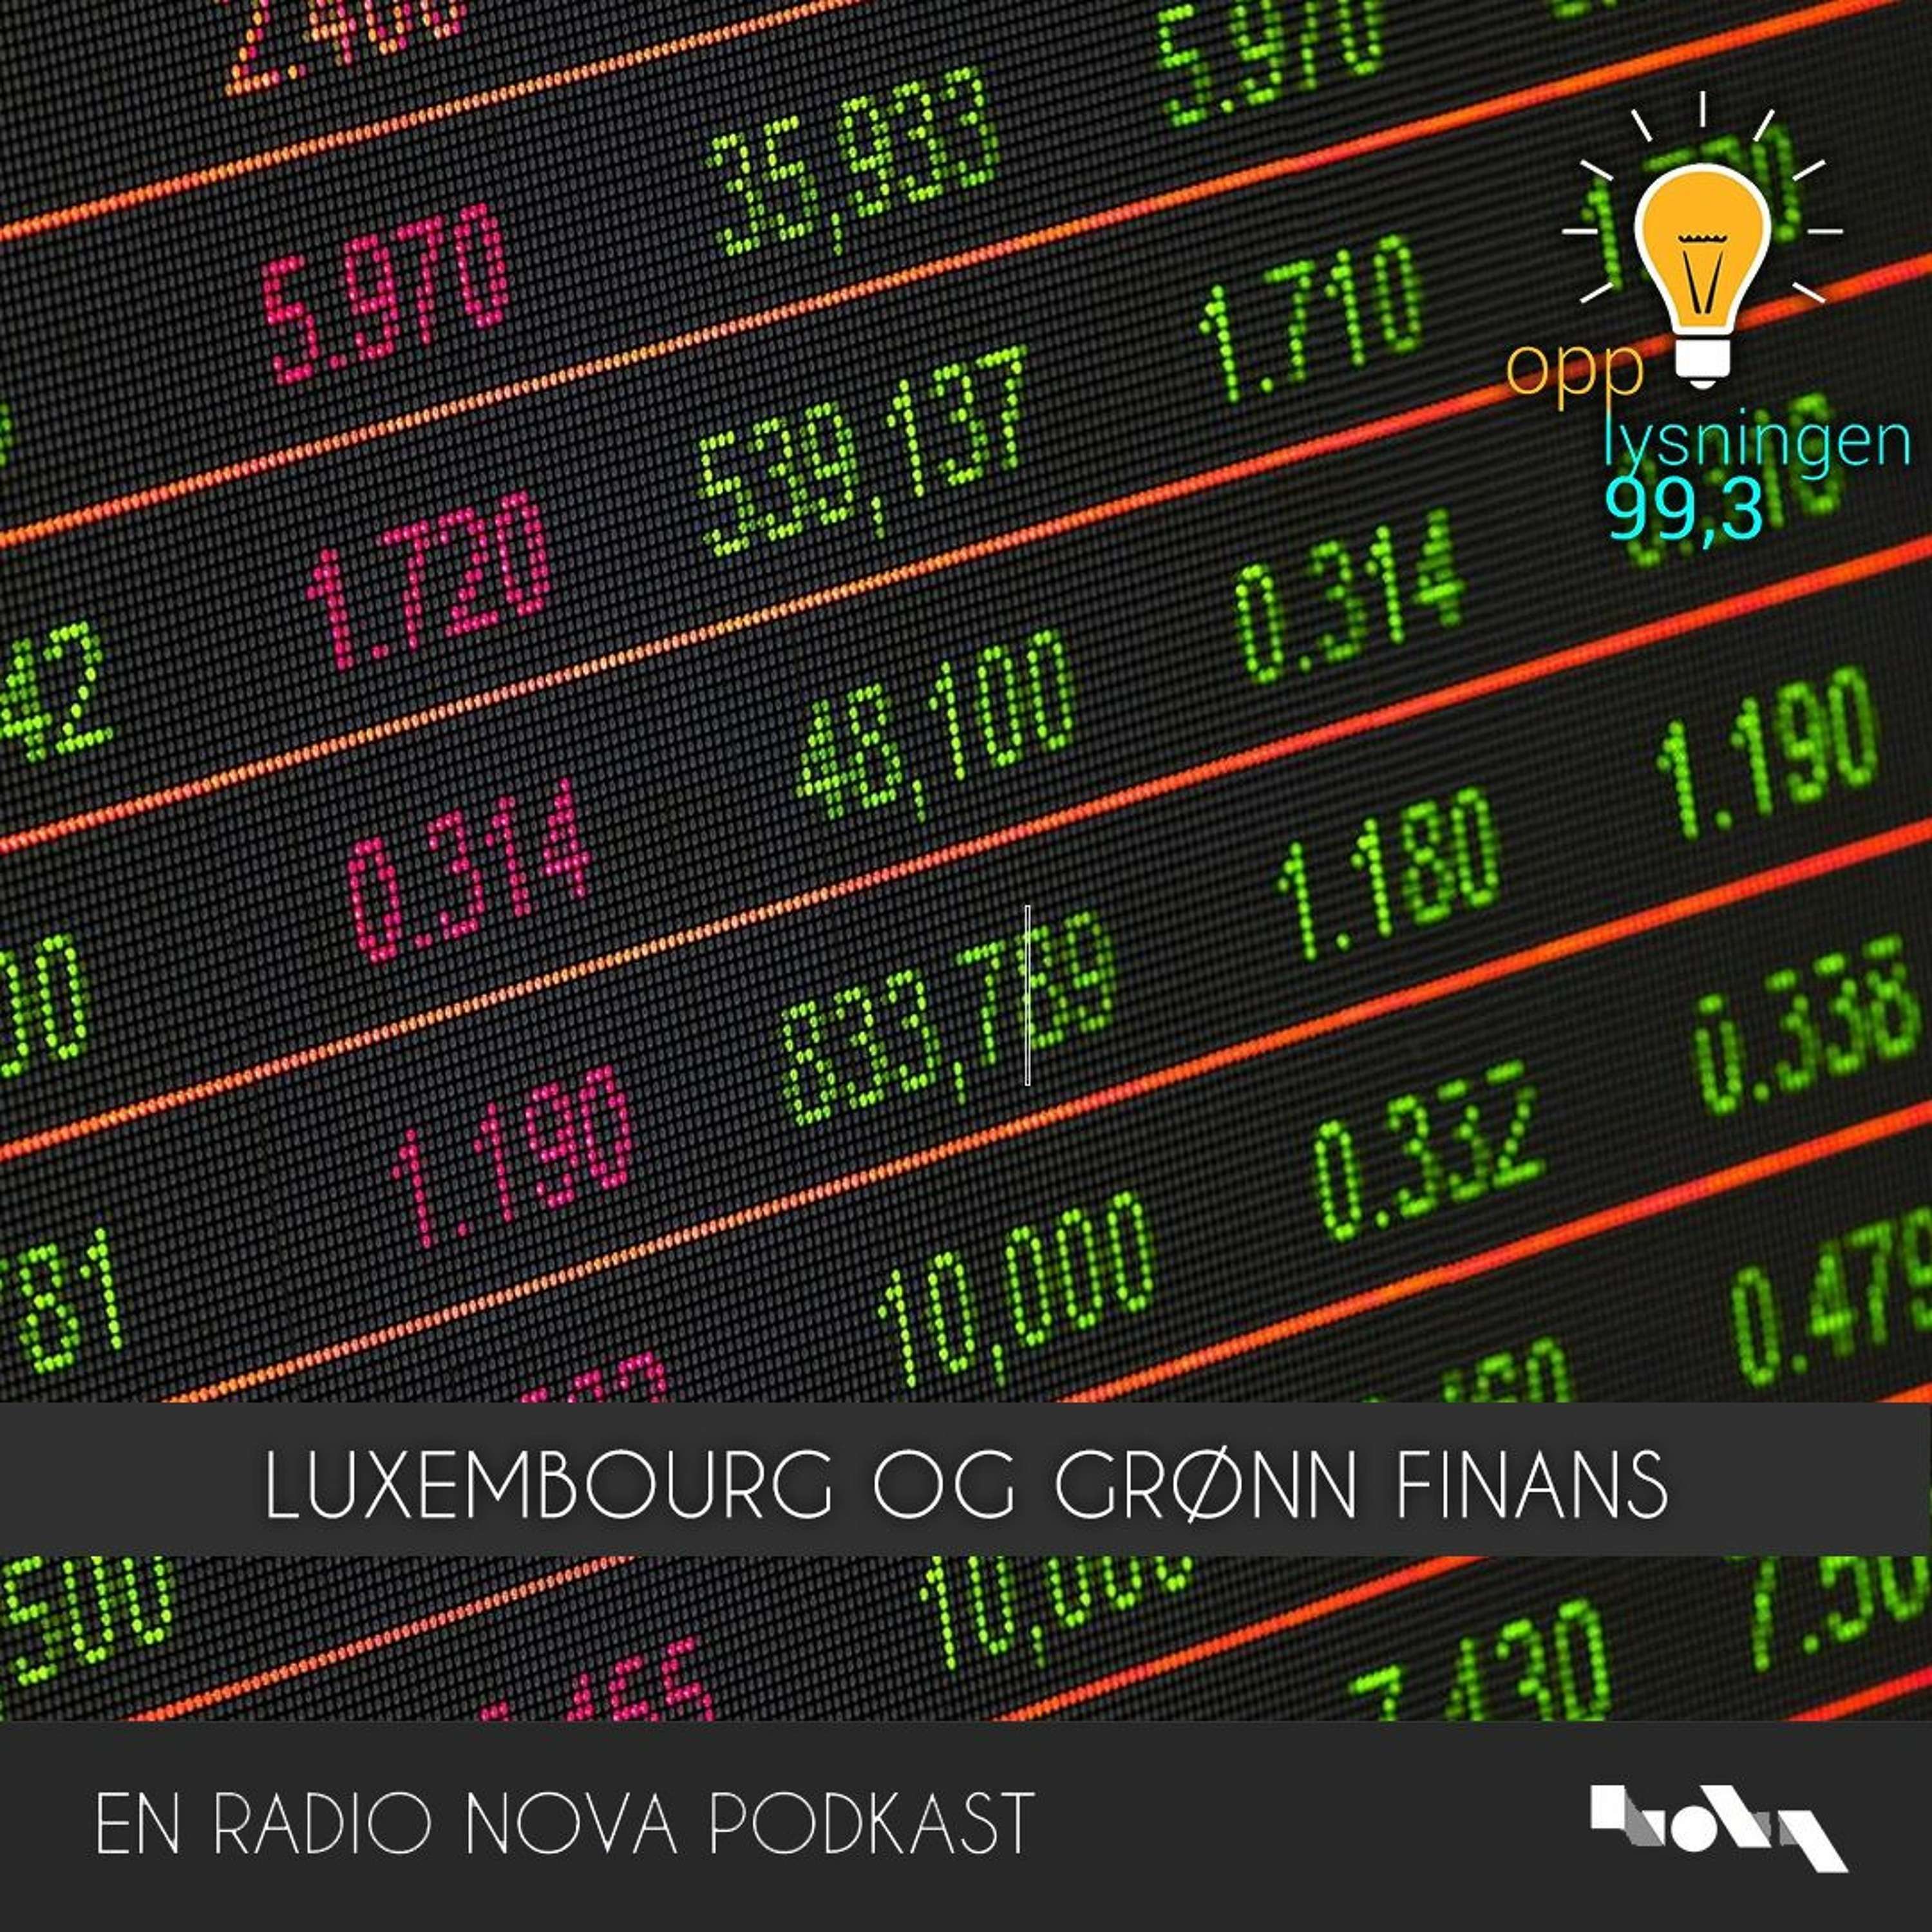 Luxembourg og grønn finans